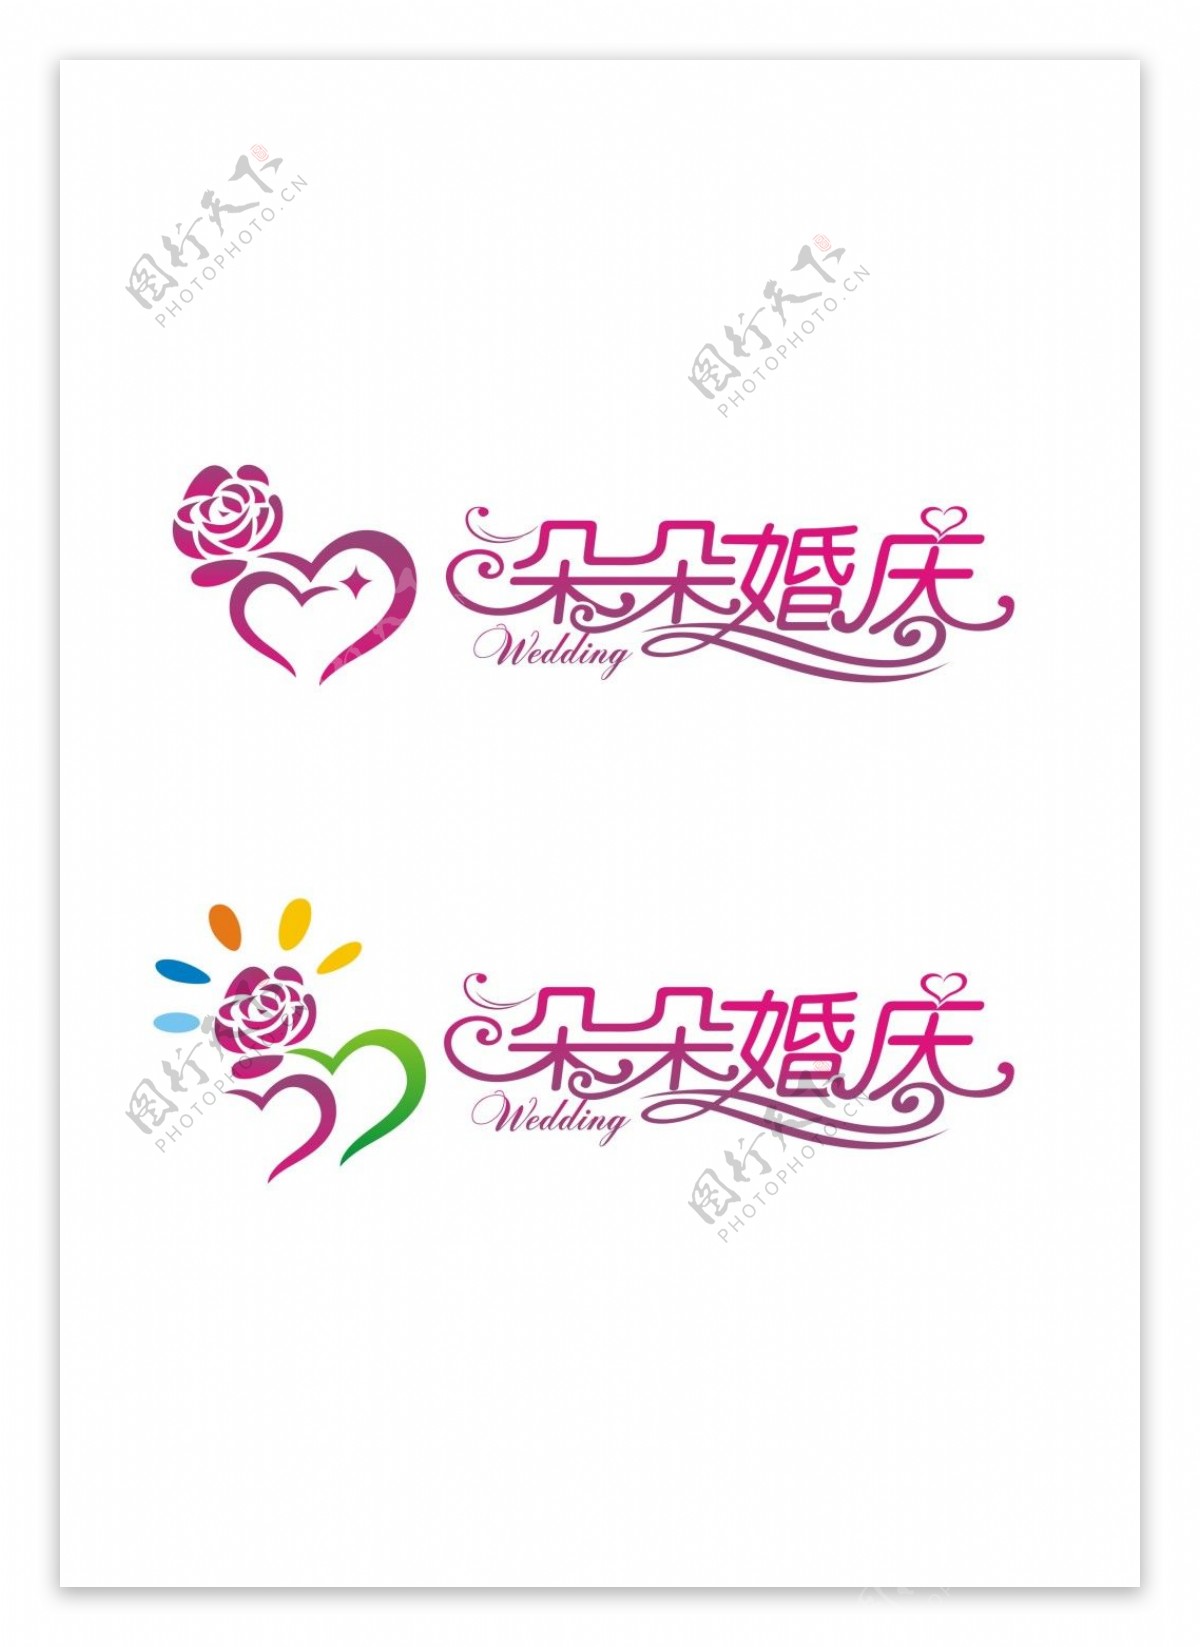 婚庆logo设计图片